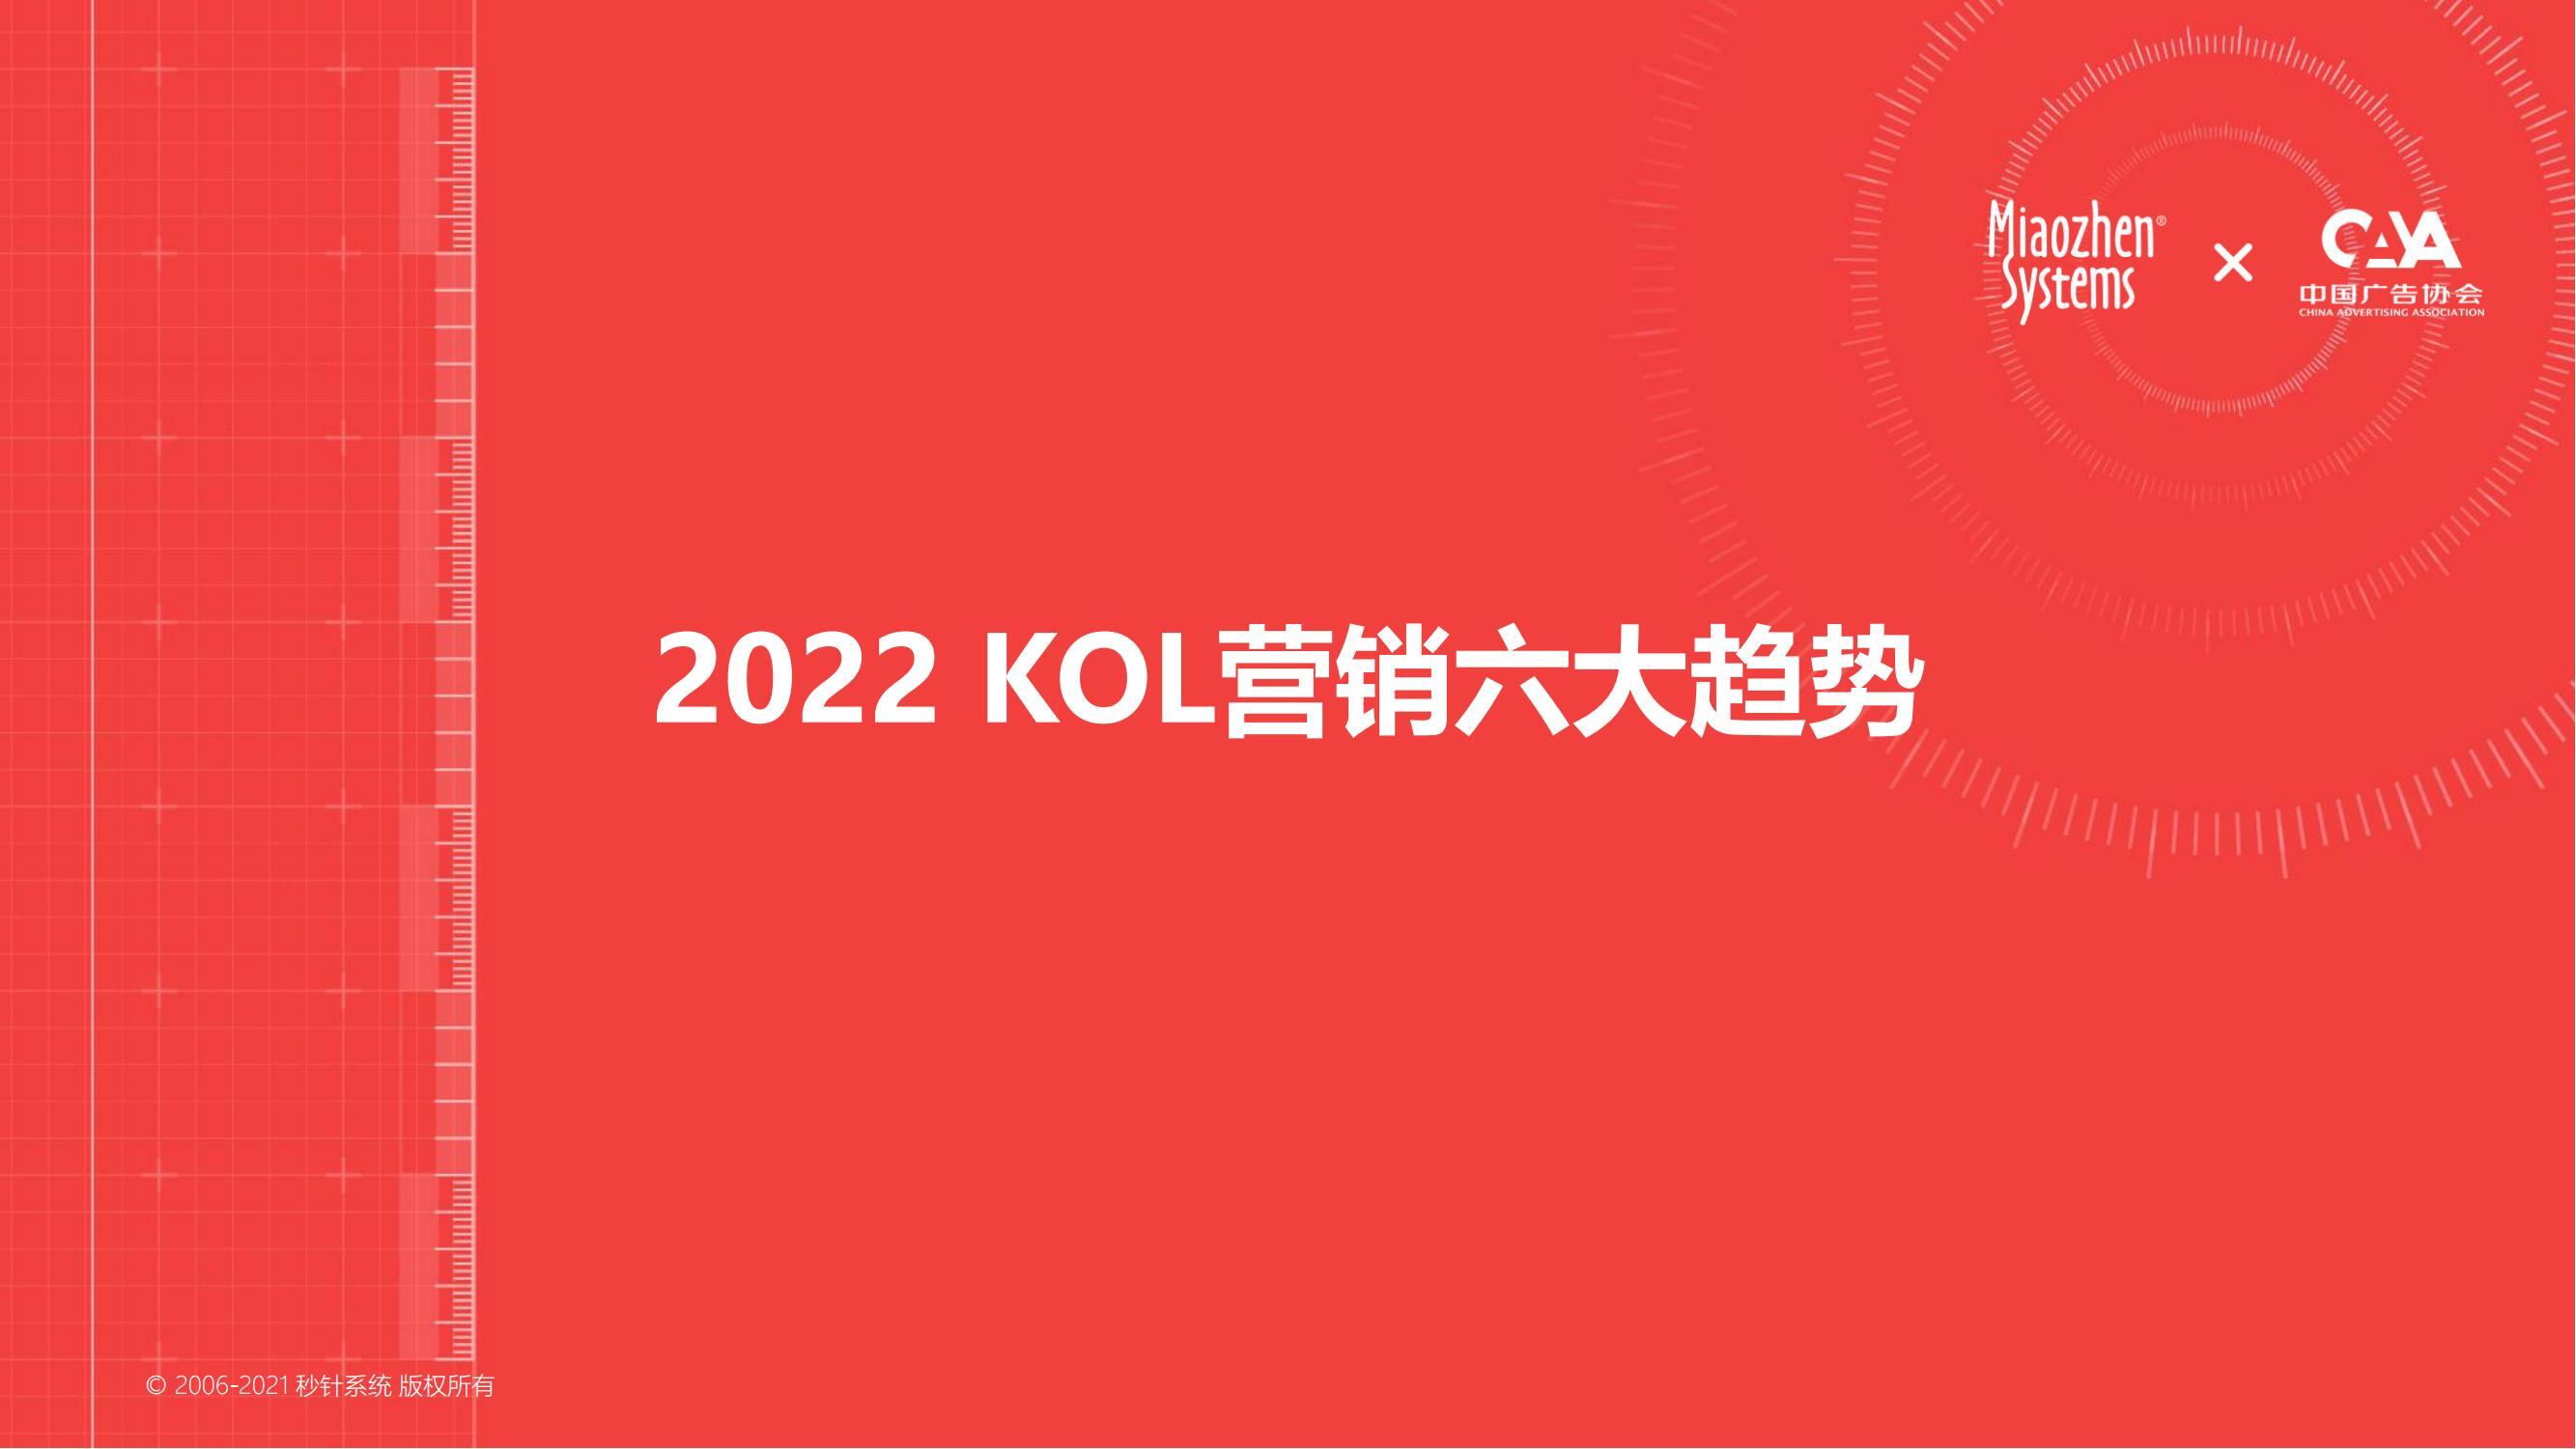 2022年KOL营销趋势白皮书